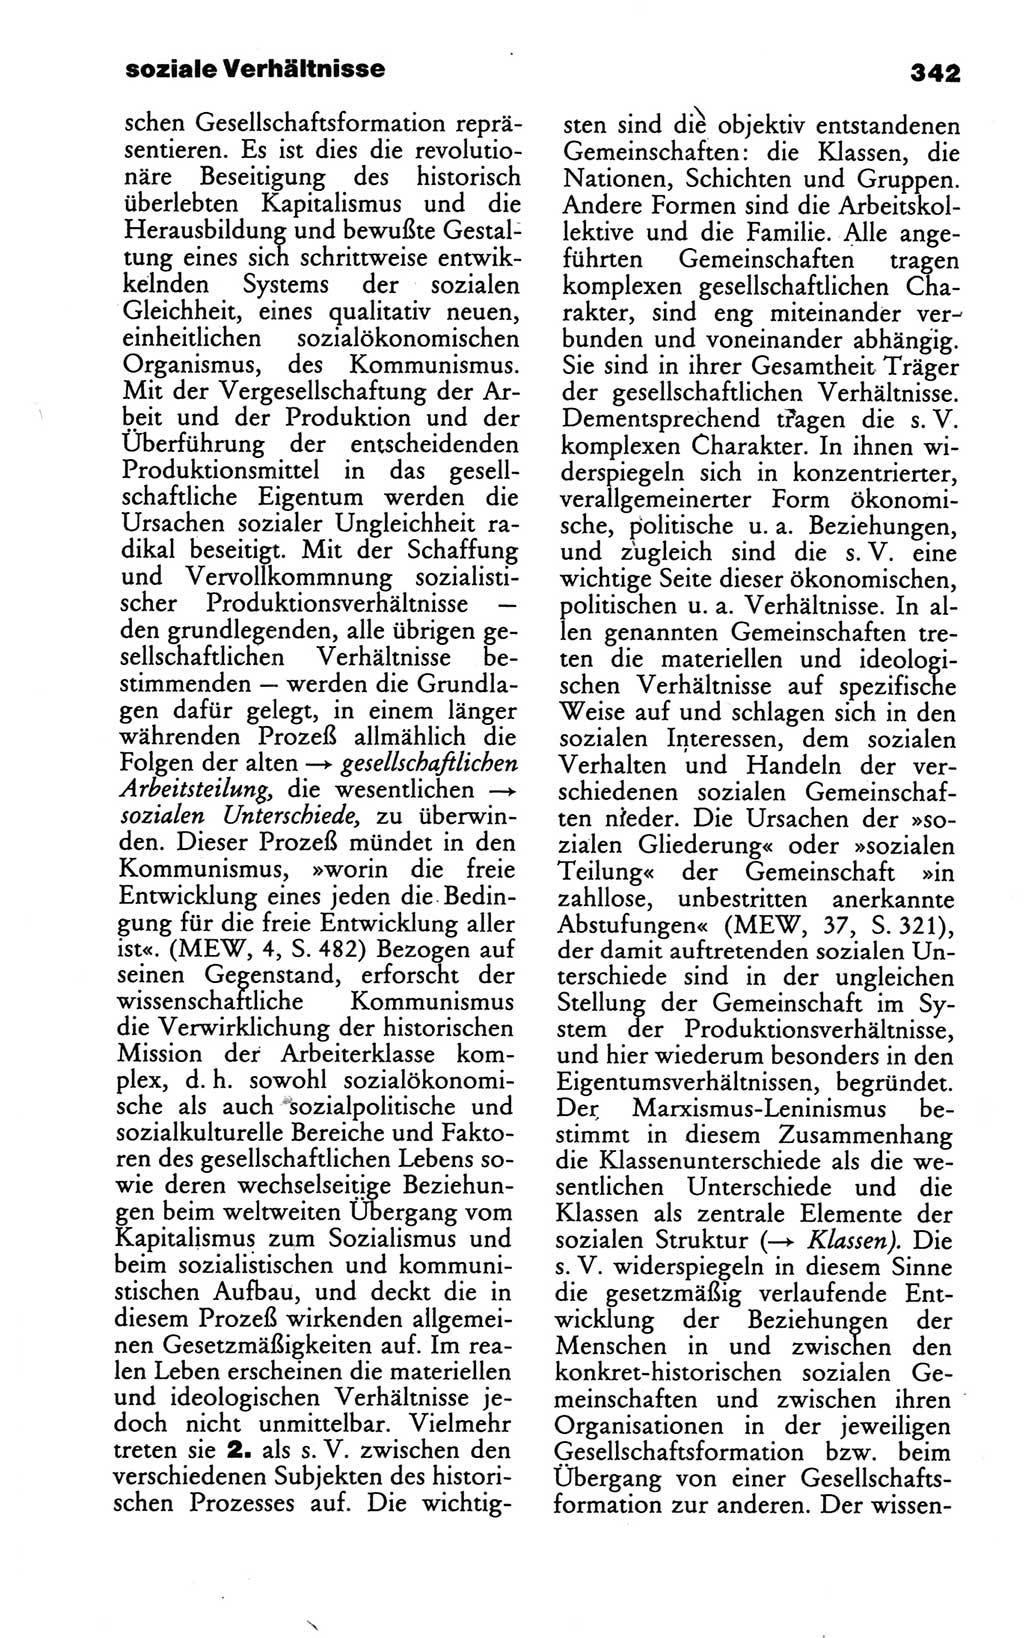 Wörterbuch des wissenschaftlichen Kommunismus [Deutsche Demokratische Republik (DDR)] 1986, Seite 342 (Wb. wiss. Komm. DDR 1986, S. 342)